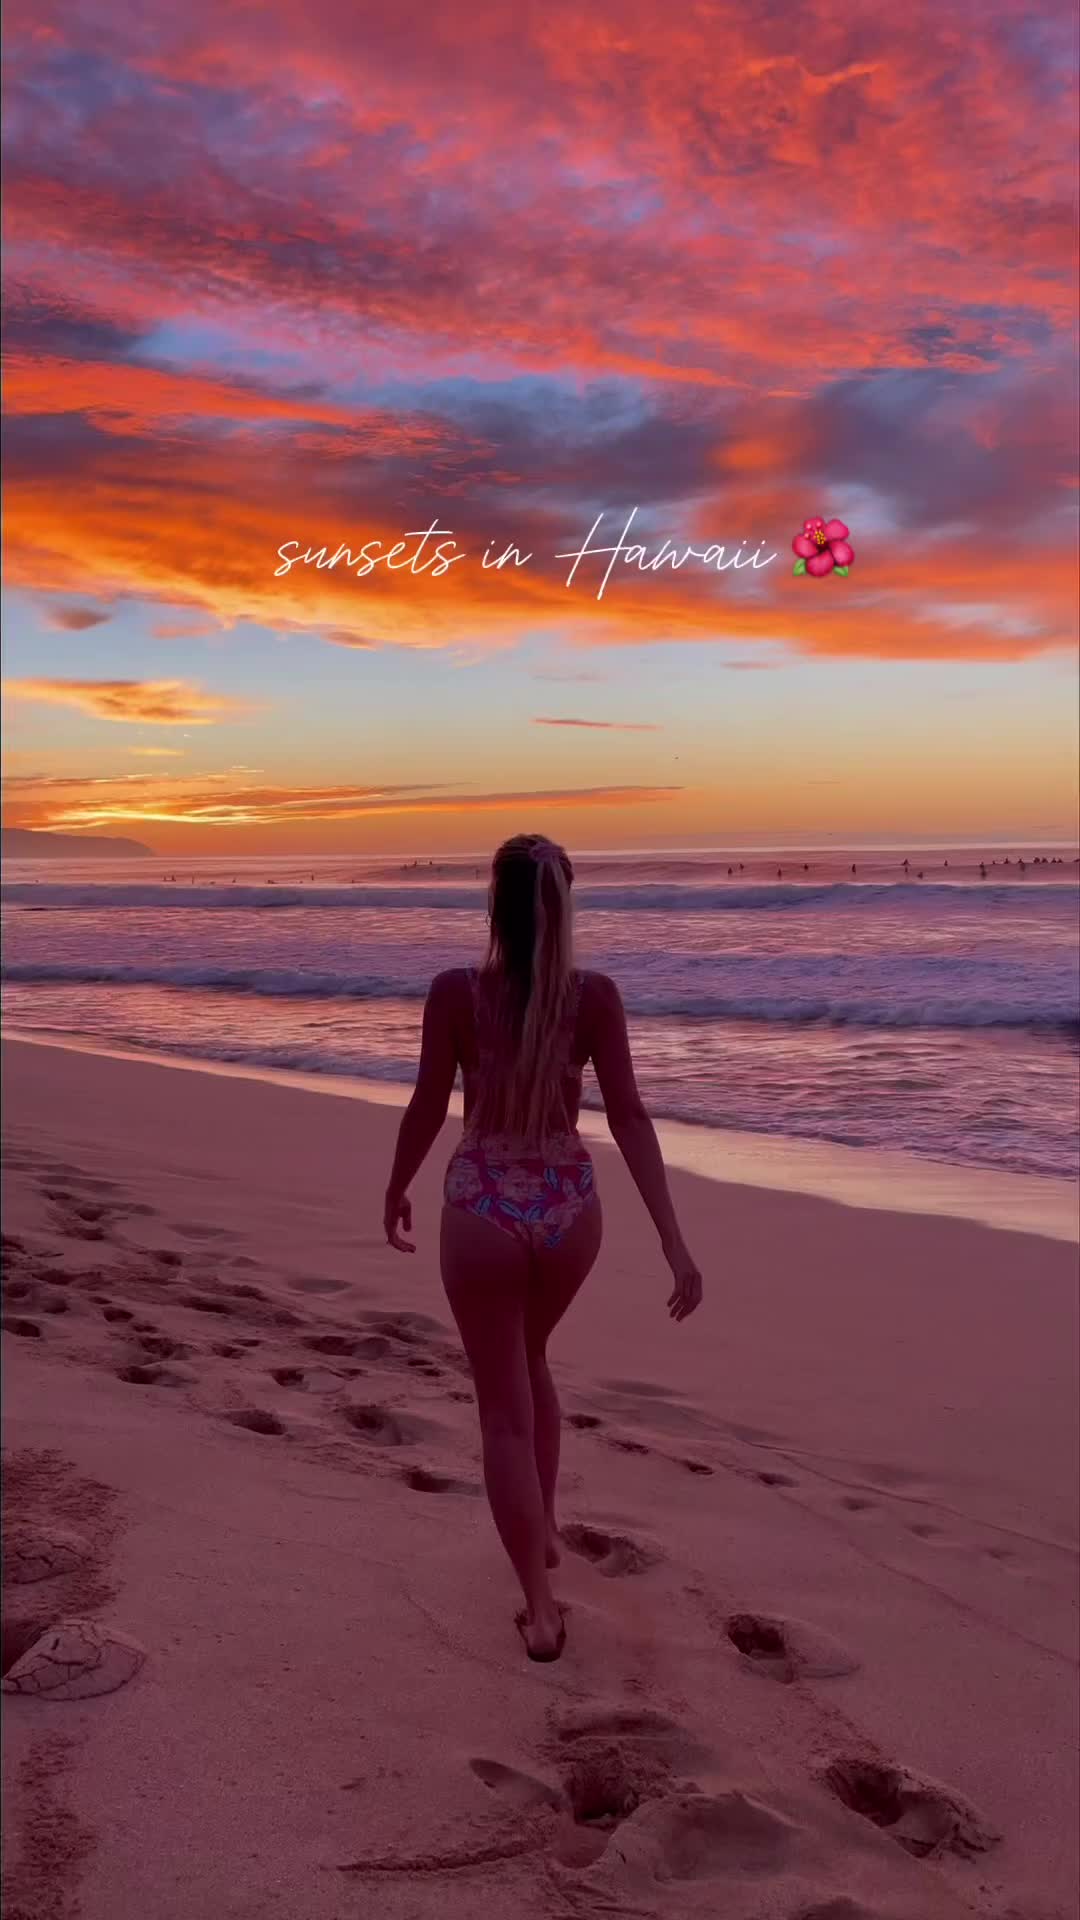 Stunning Island Sunsets at Waikiki Beach, Oahu